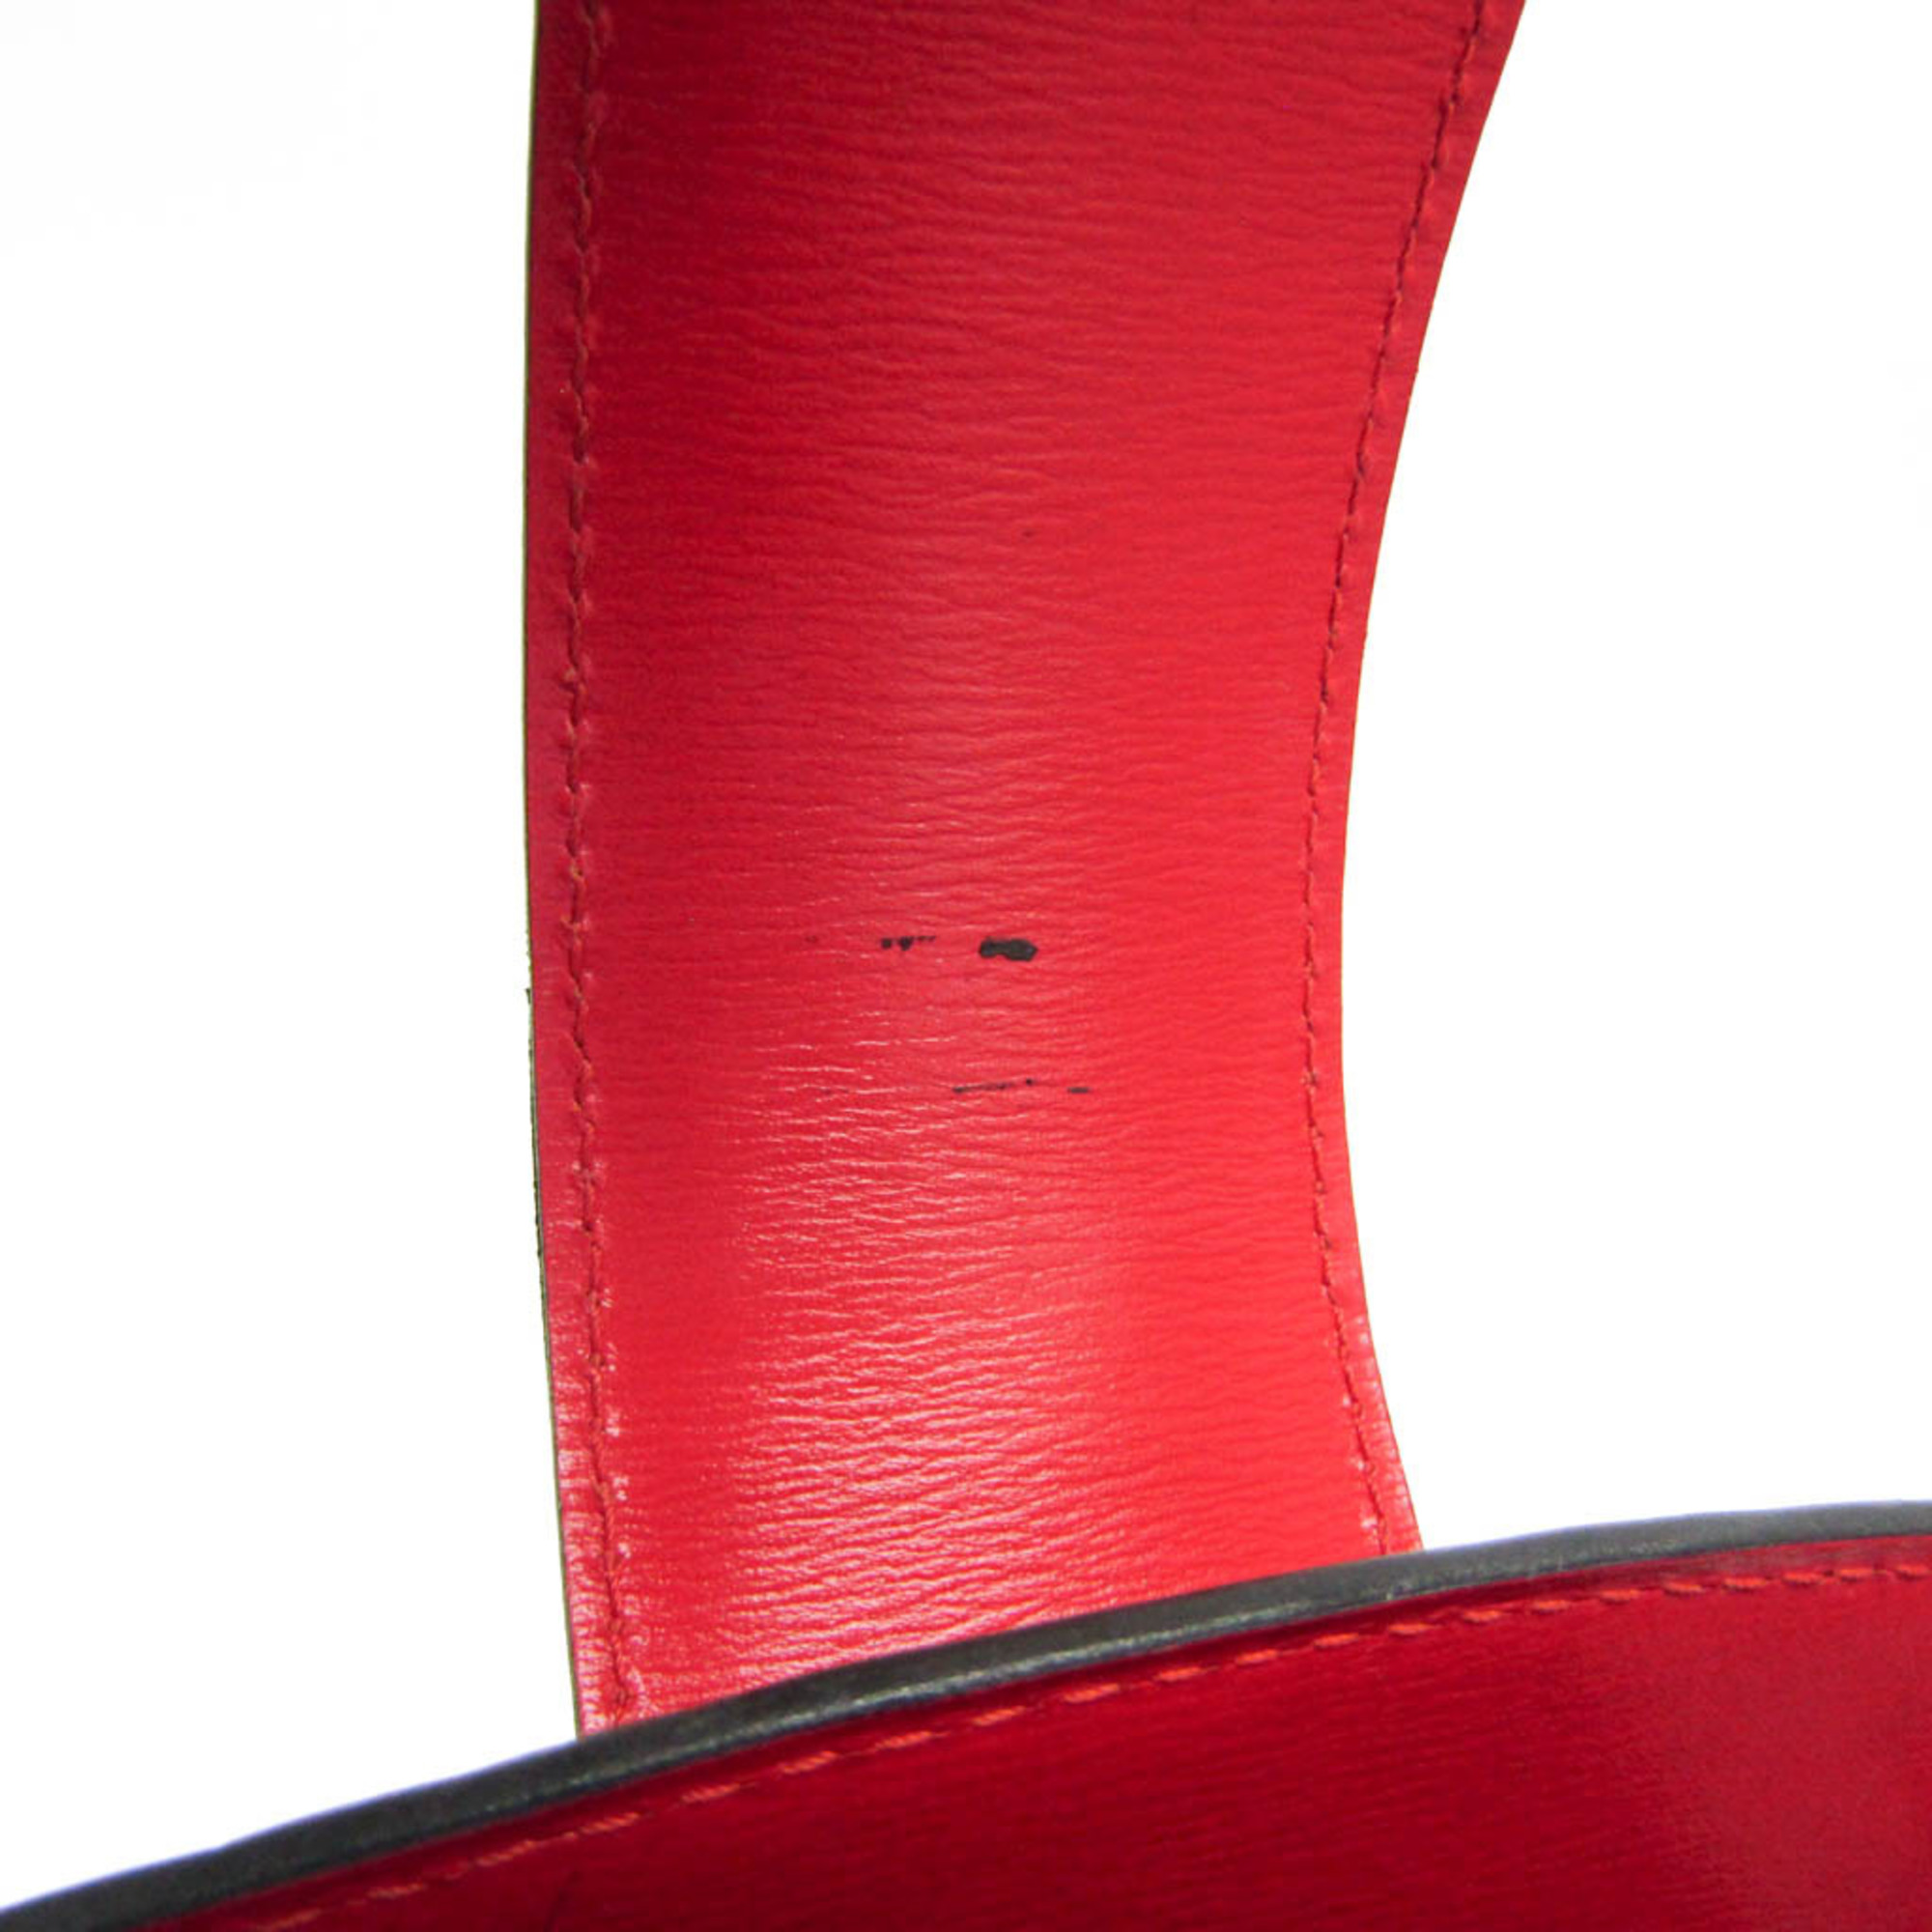 ルイ・ヴィトン(Louis Vuitton) エピ クリュニー M52257 レディース 